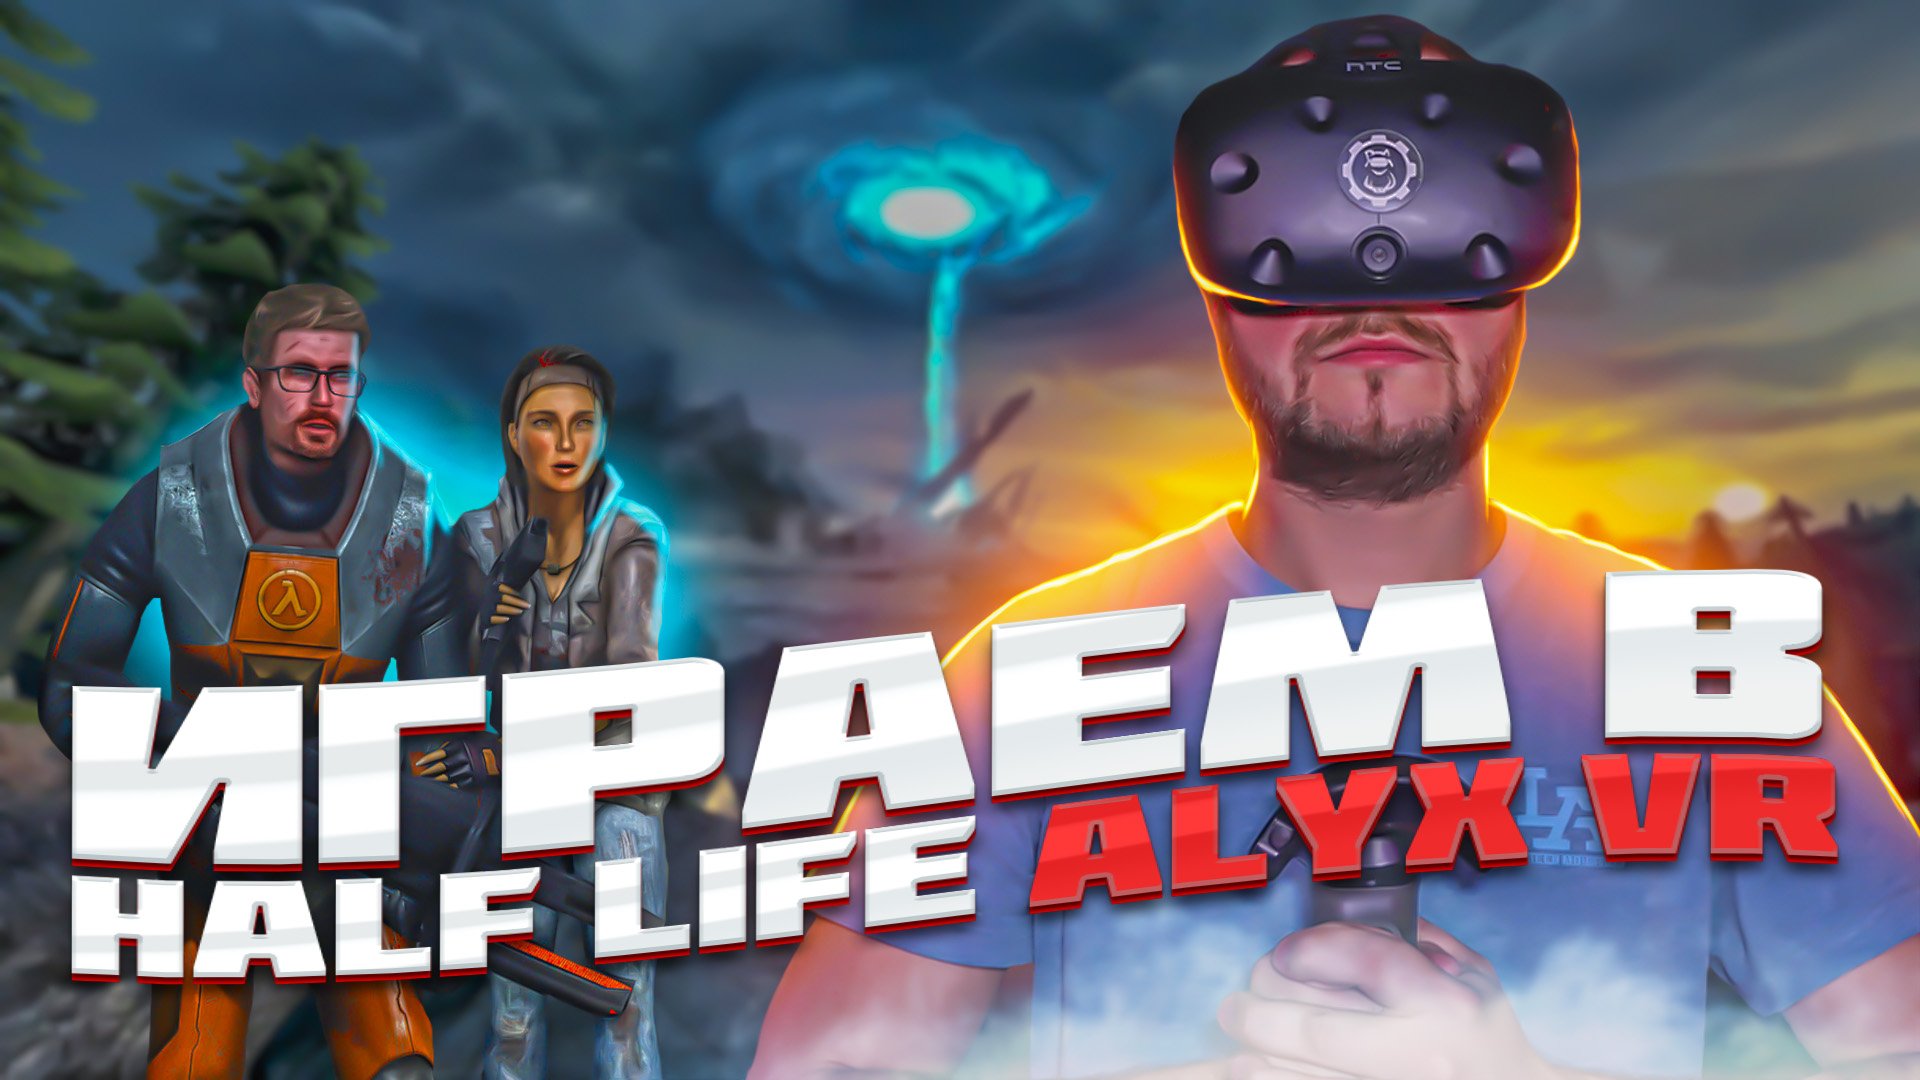 Как получить скидку 50% в VR клубе? Играем в Half Life 2 Alyx VR